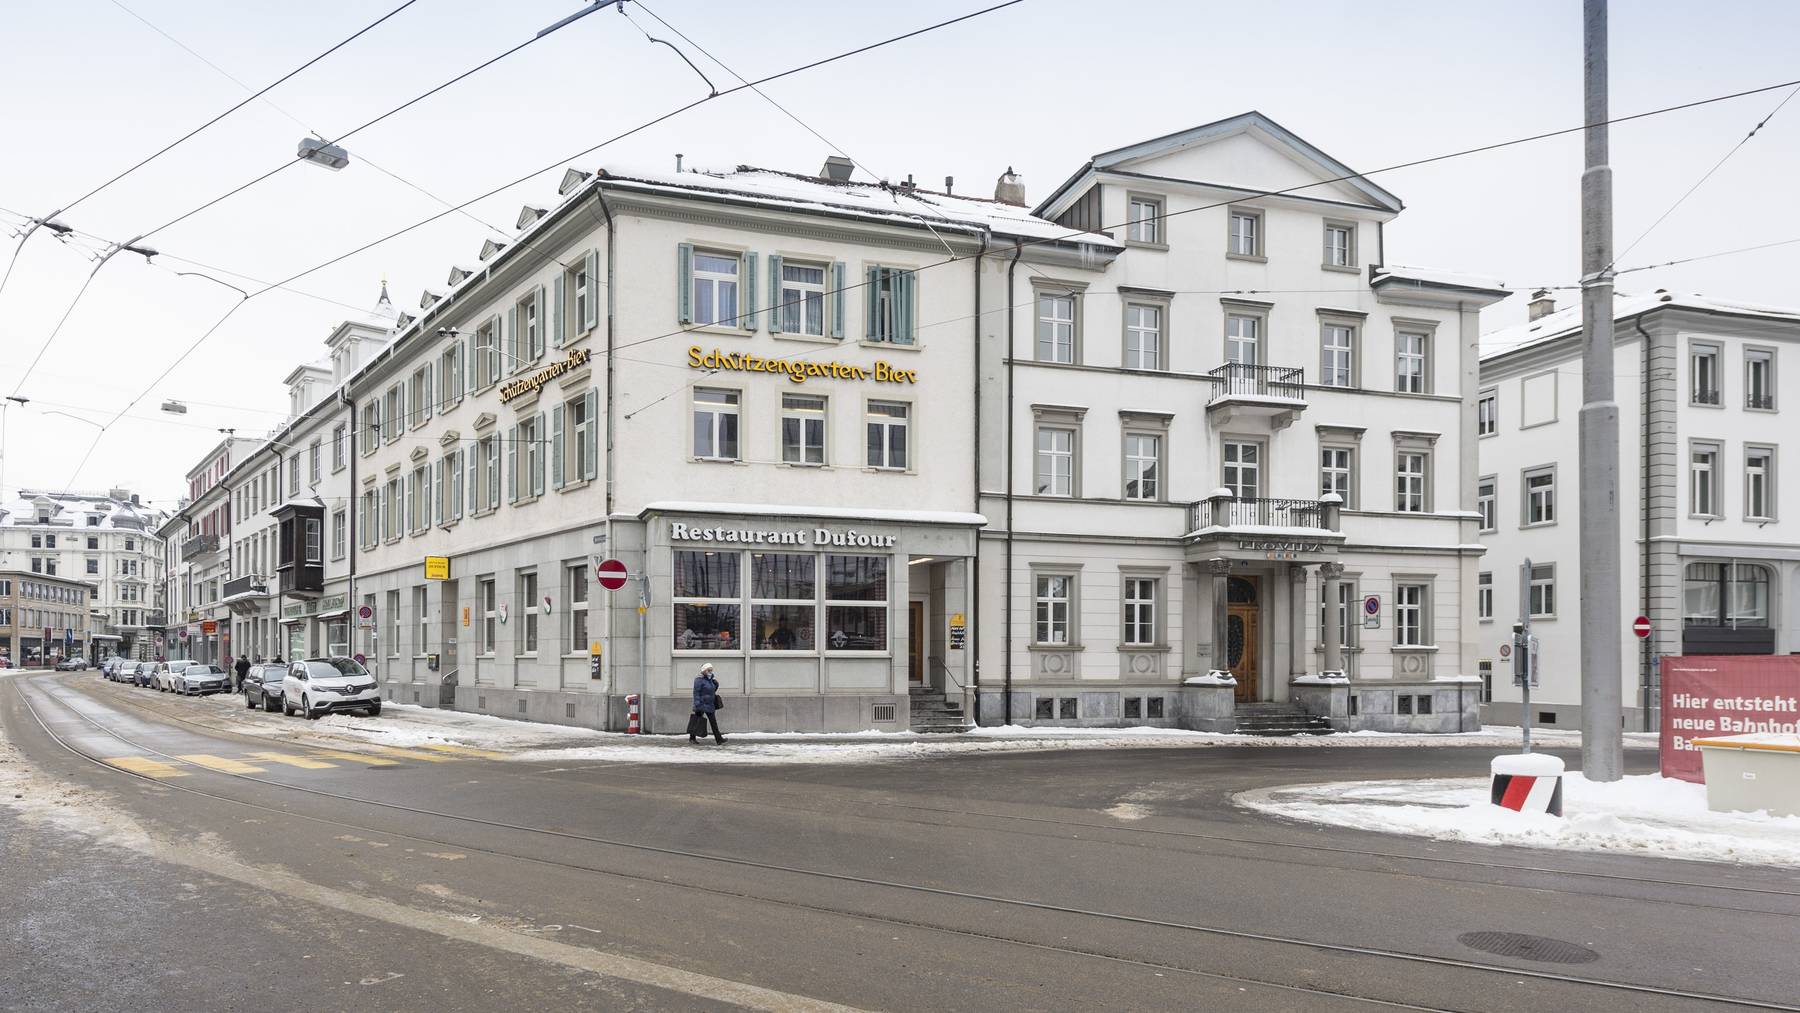 In der Nähe des Bahnhofs St.Gallen entsteht eine Gasthausbrauerei. (Archiv)